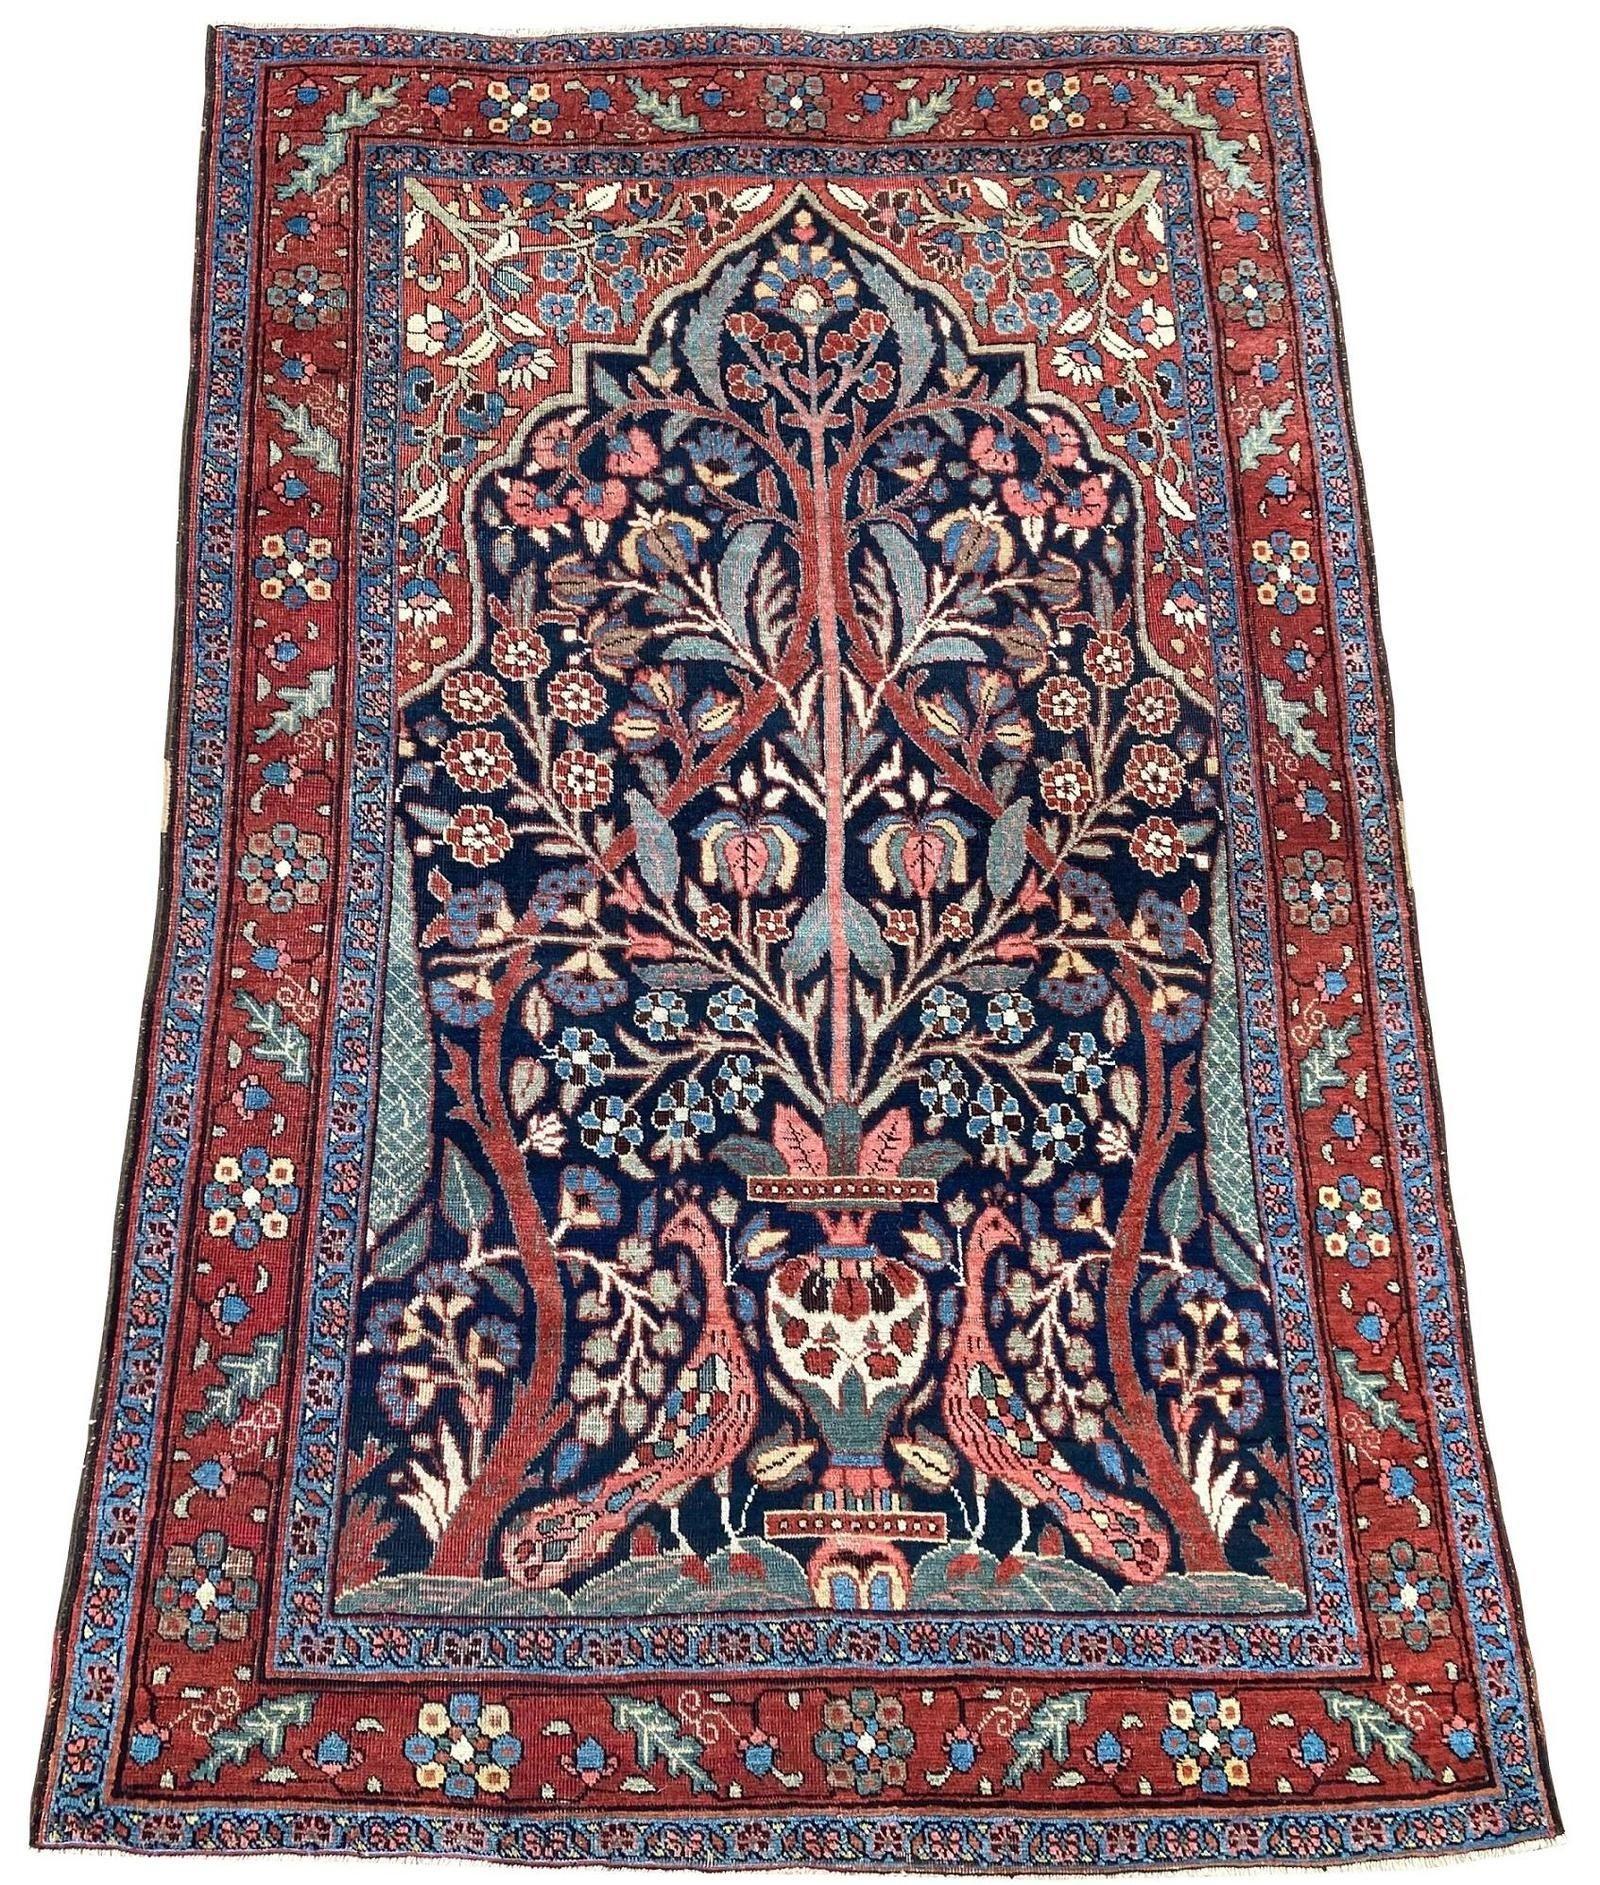 Un fabuleux tapis Heriz ancien, tissé à la main vers 1900, avec un motif inhabituel de vase flanqué de deux paons (à l'air légèrement désintéressé !) sur un champ indigo foncé et de superbes couleurs secondaires. Inhabituel de par sa conception et